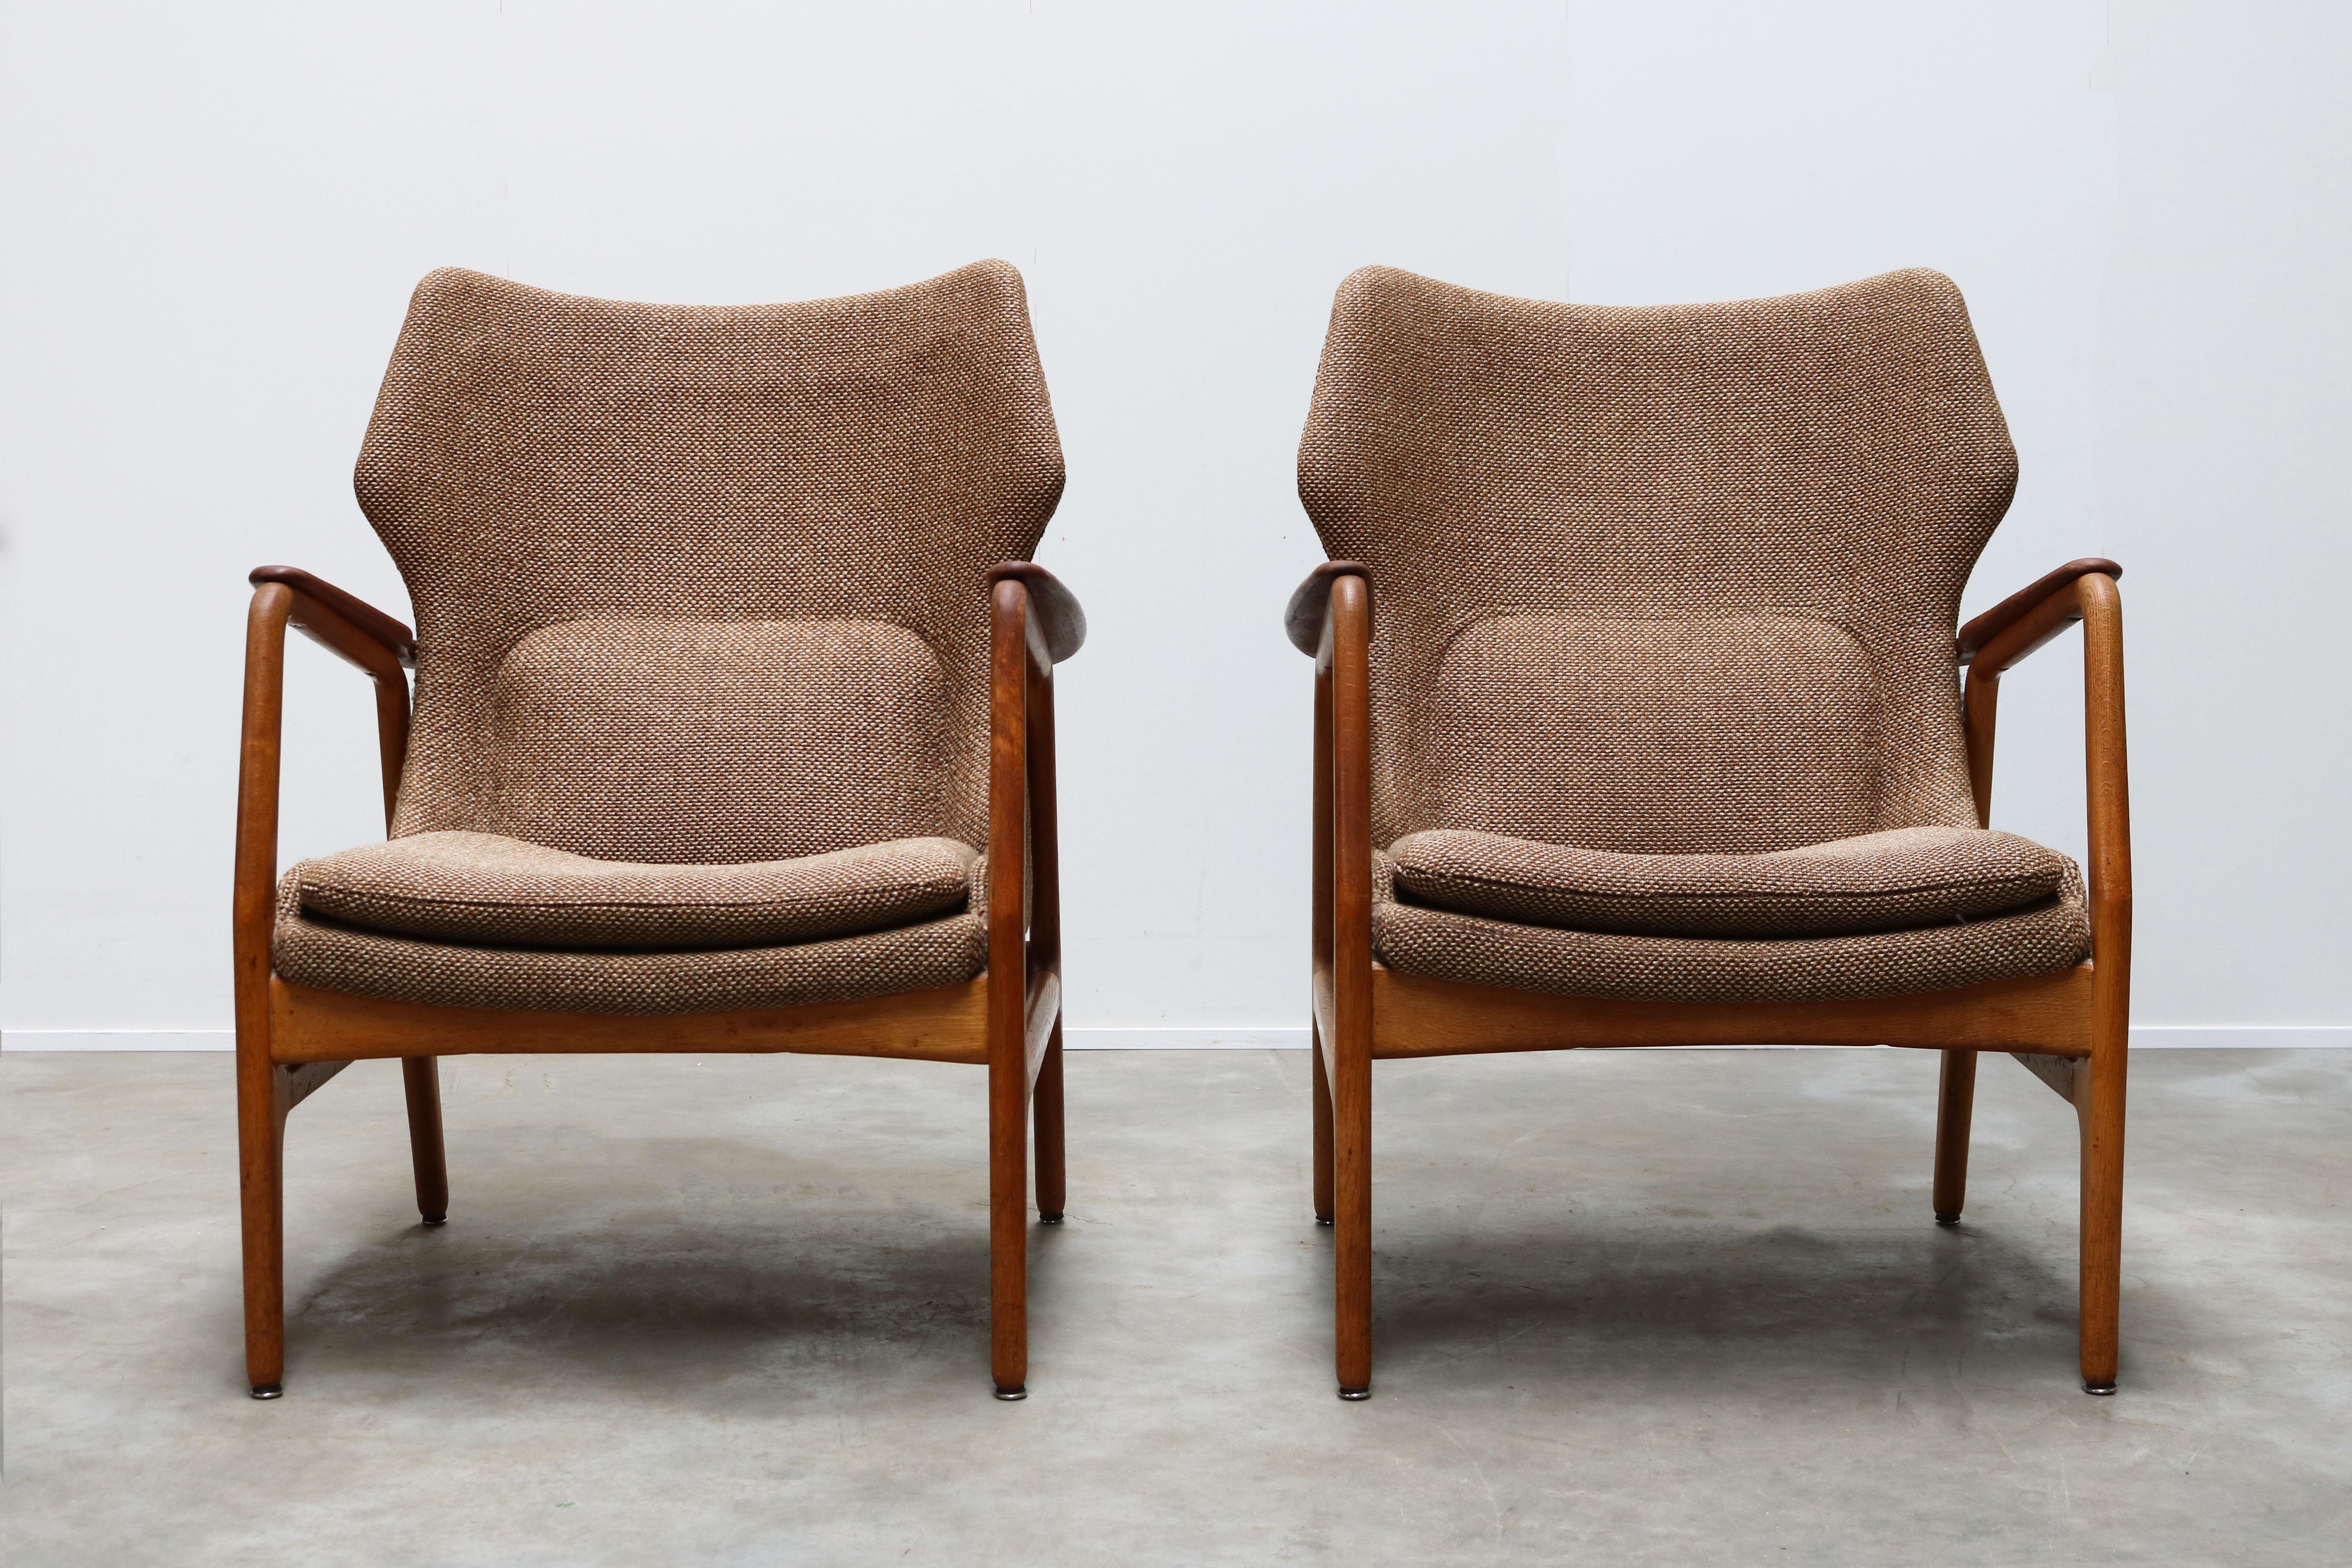 Pair of Danish Lounge Chairs by Aksel Bender Madsen 1952 Bovenkamp Teak Brown 2